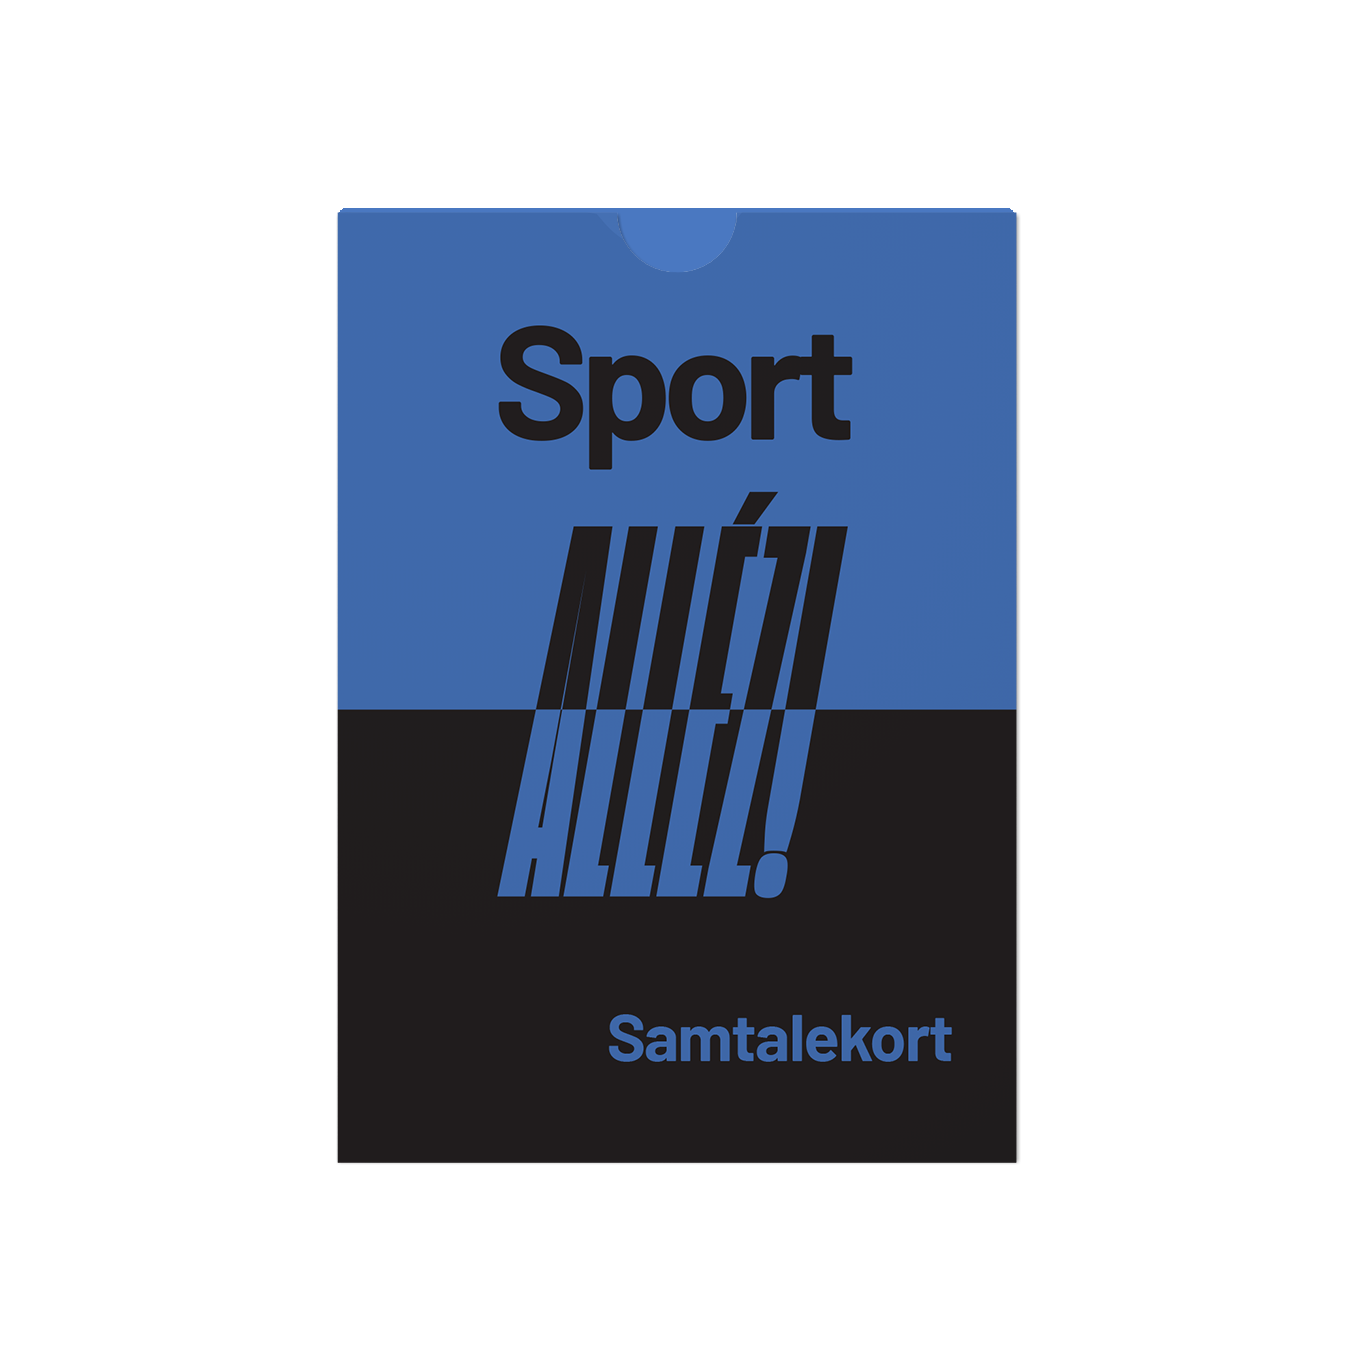 Sport - Saml holdet til nye samtaler og minder om glæden ved sport.